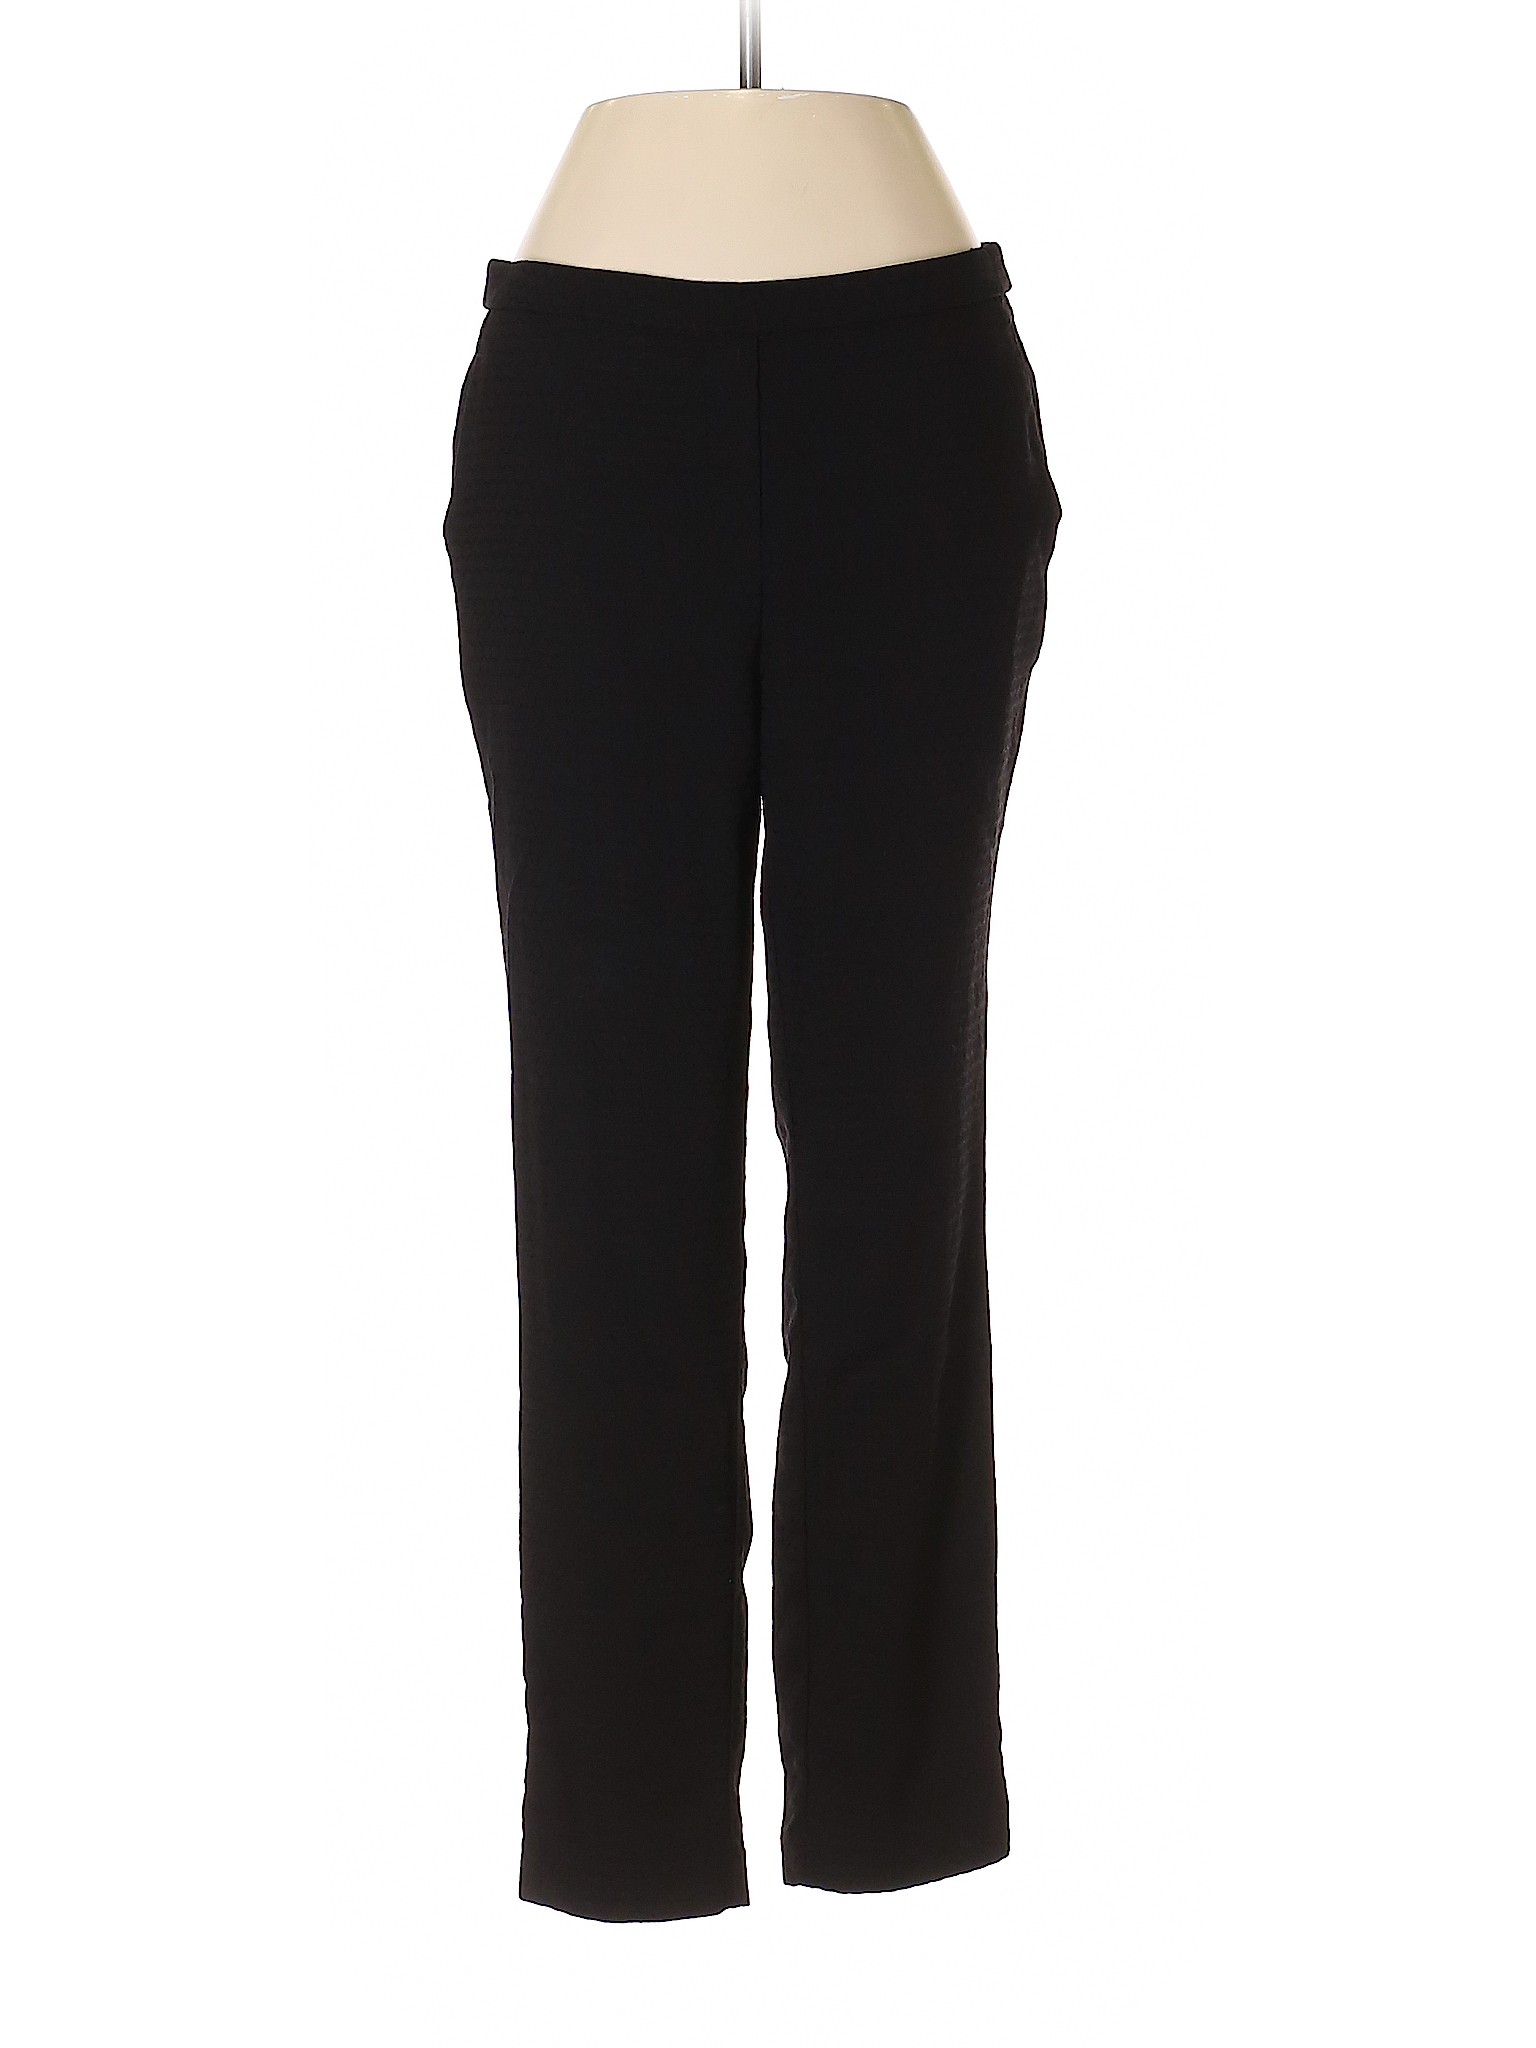 Jules & Leopold Solid Black Dress Pants Size S - 85% off | thredUP